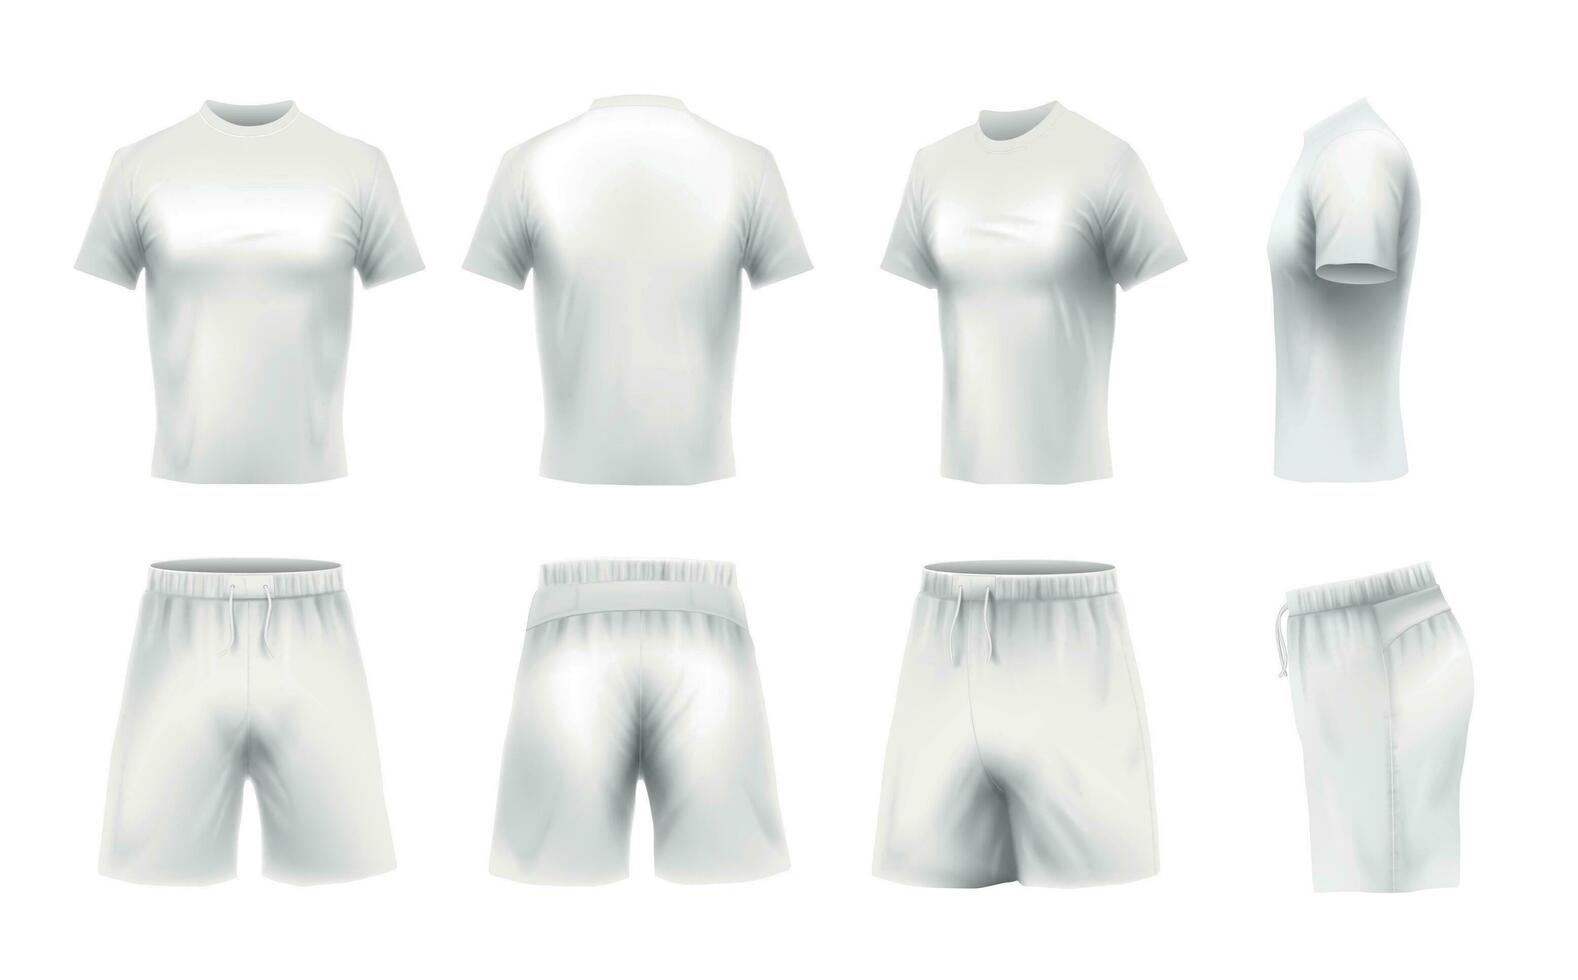 realista camiseta e calção brincar. branco Camisetas modelo, esporte uniforme roupas 3d vetor conjunto